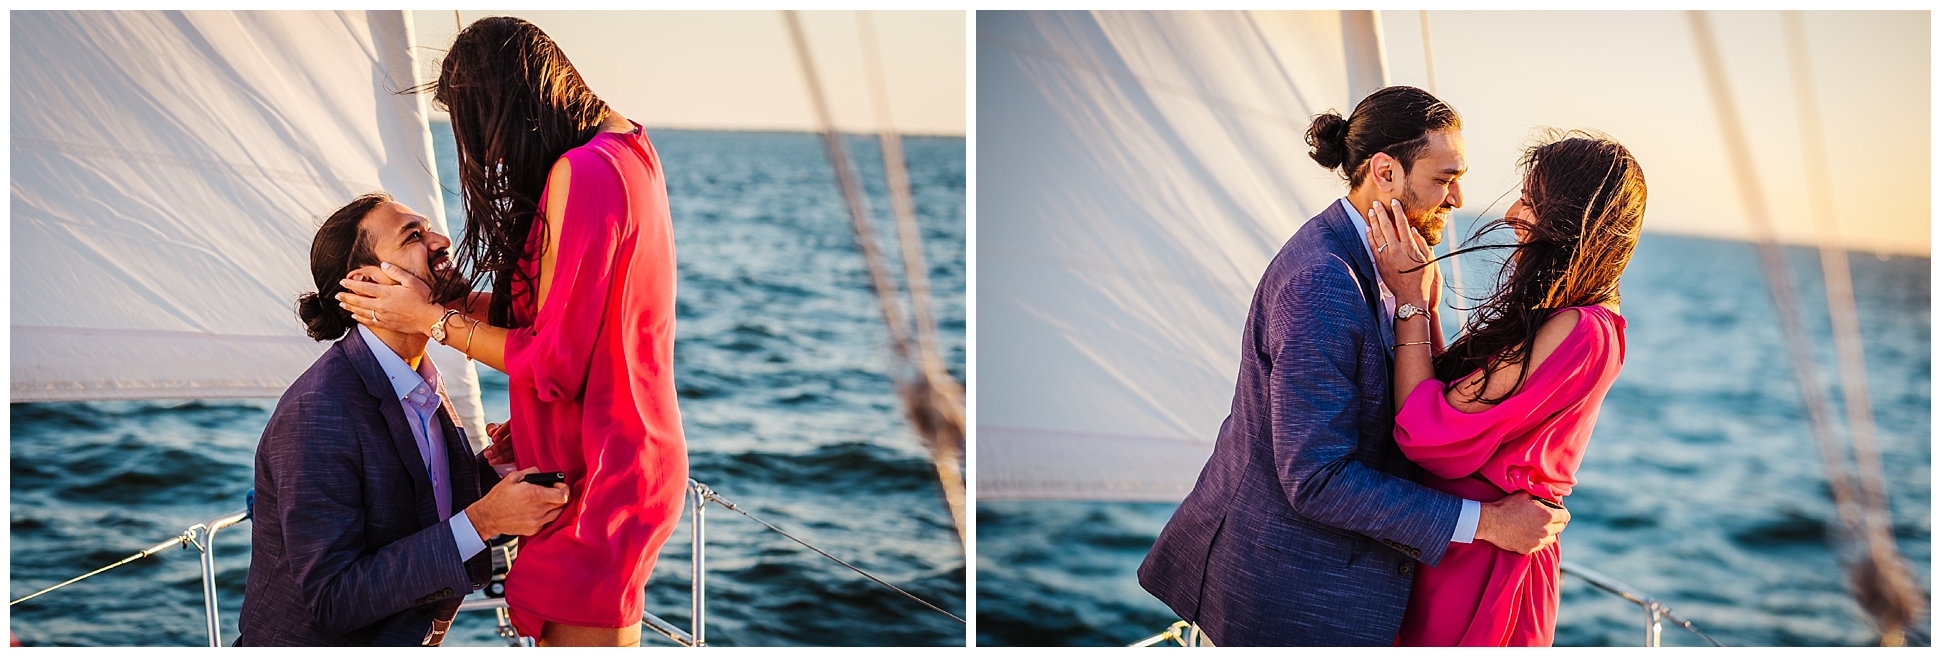 tampa bay-sailboat-sunset-proposal-engagememnt_0008.jpg